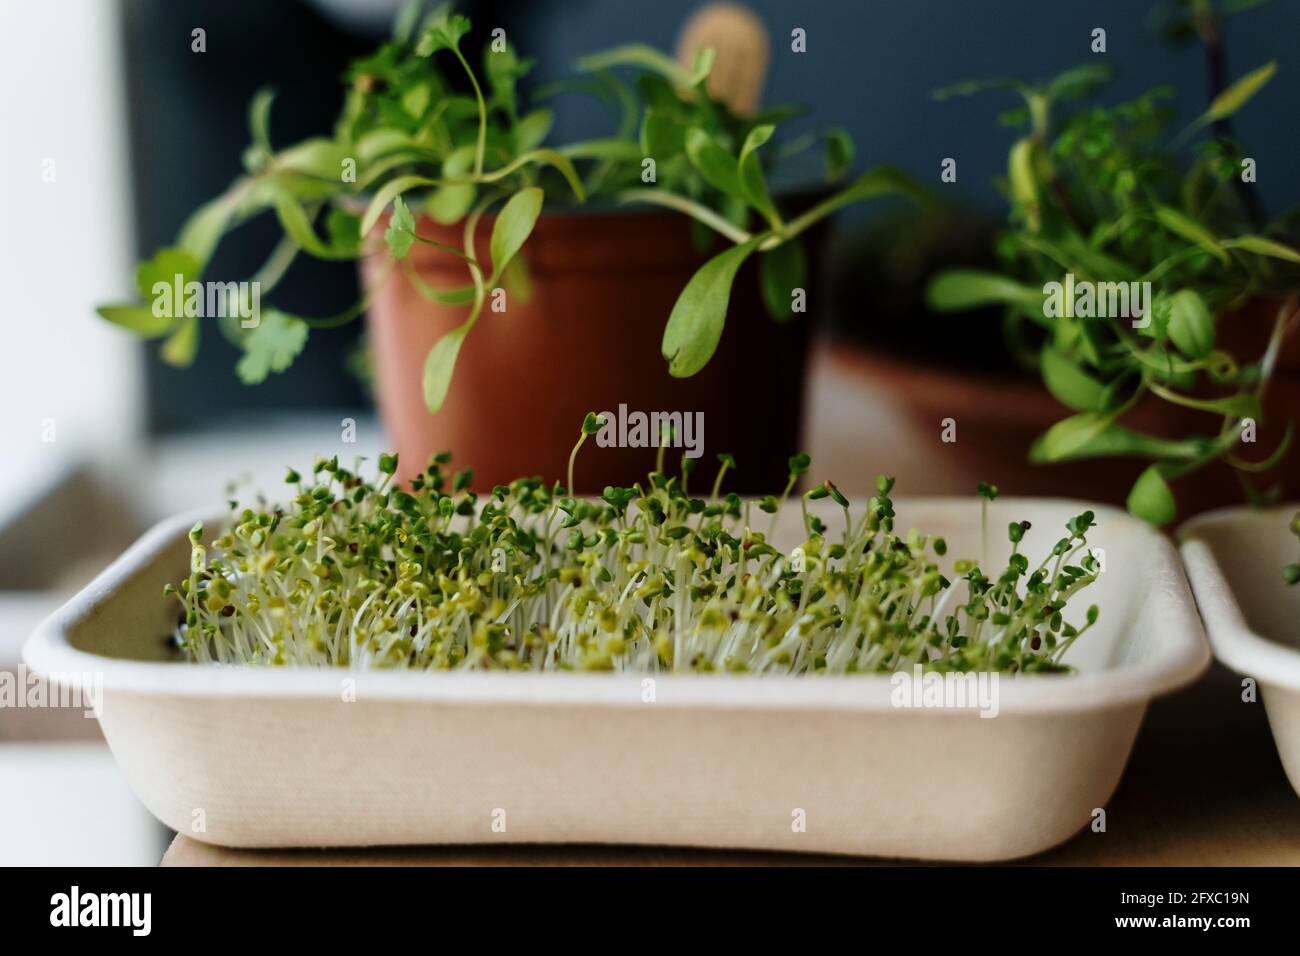 Tray of fresh microgreens Stock Photo